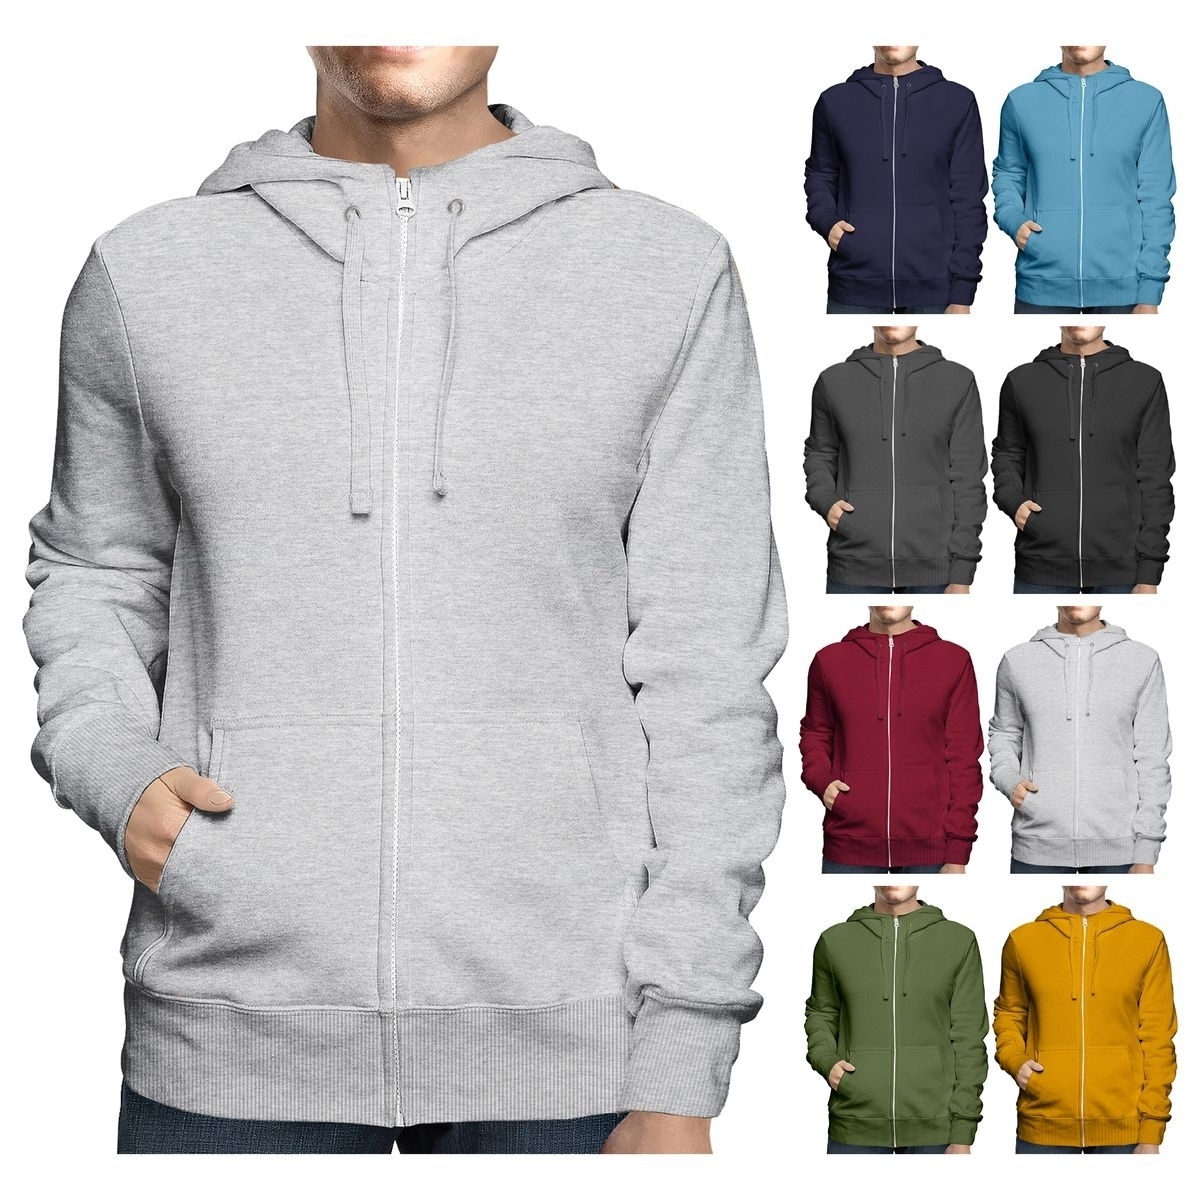 Men's Big & Tall Winter Warm Soft Cozy Full Zip-Up Fleece Lined Hoodie Sweatshirt - Black, Medium